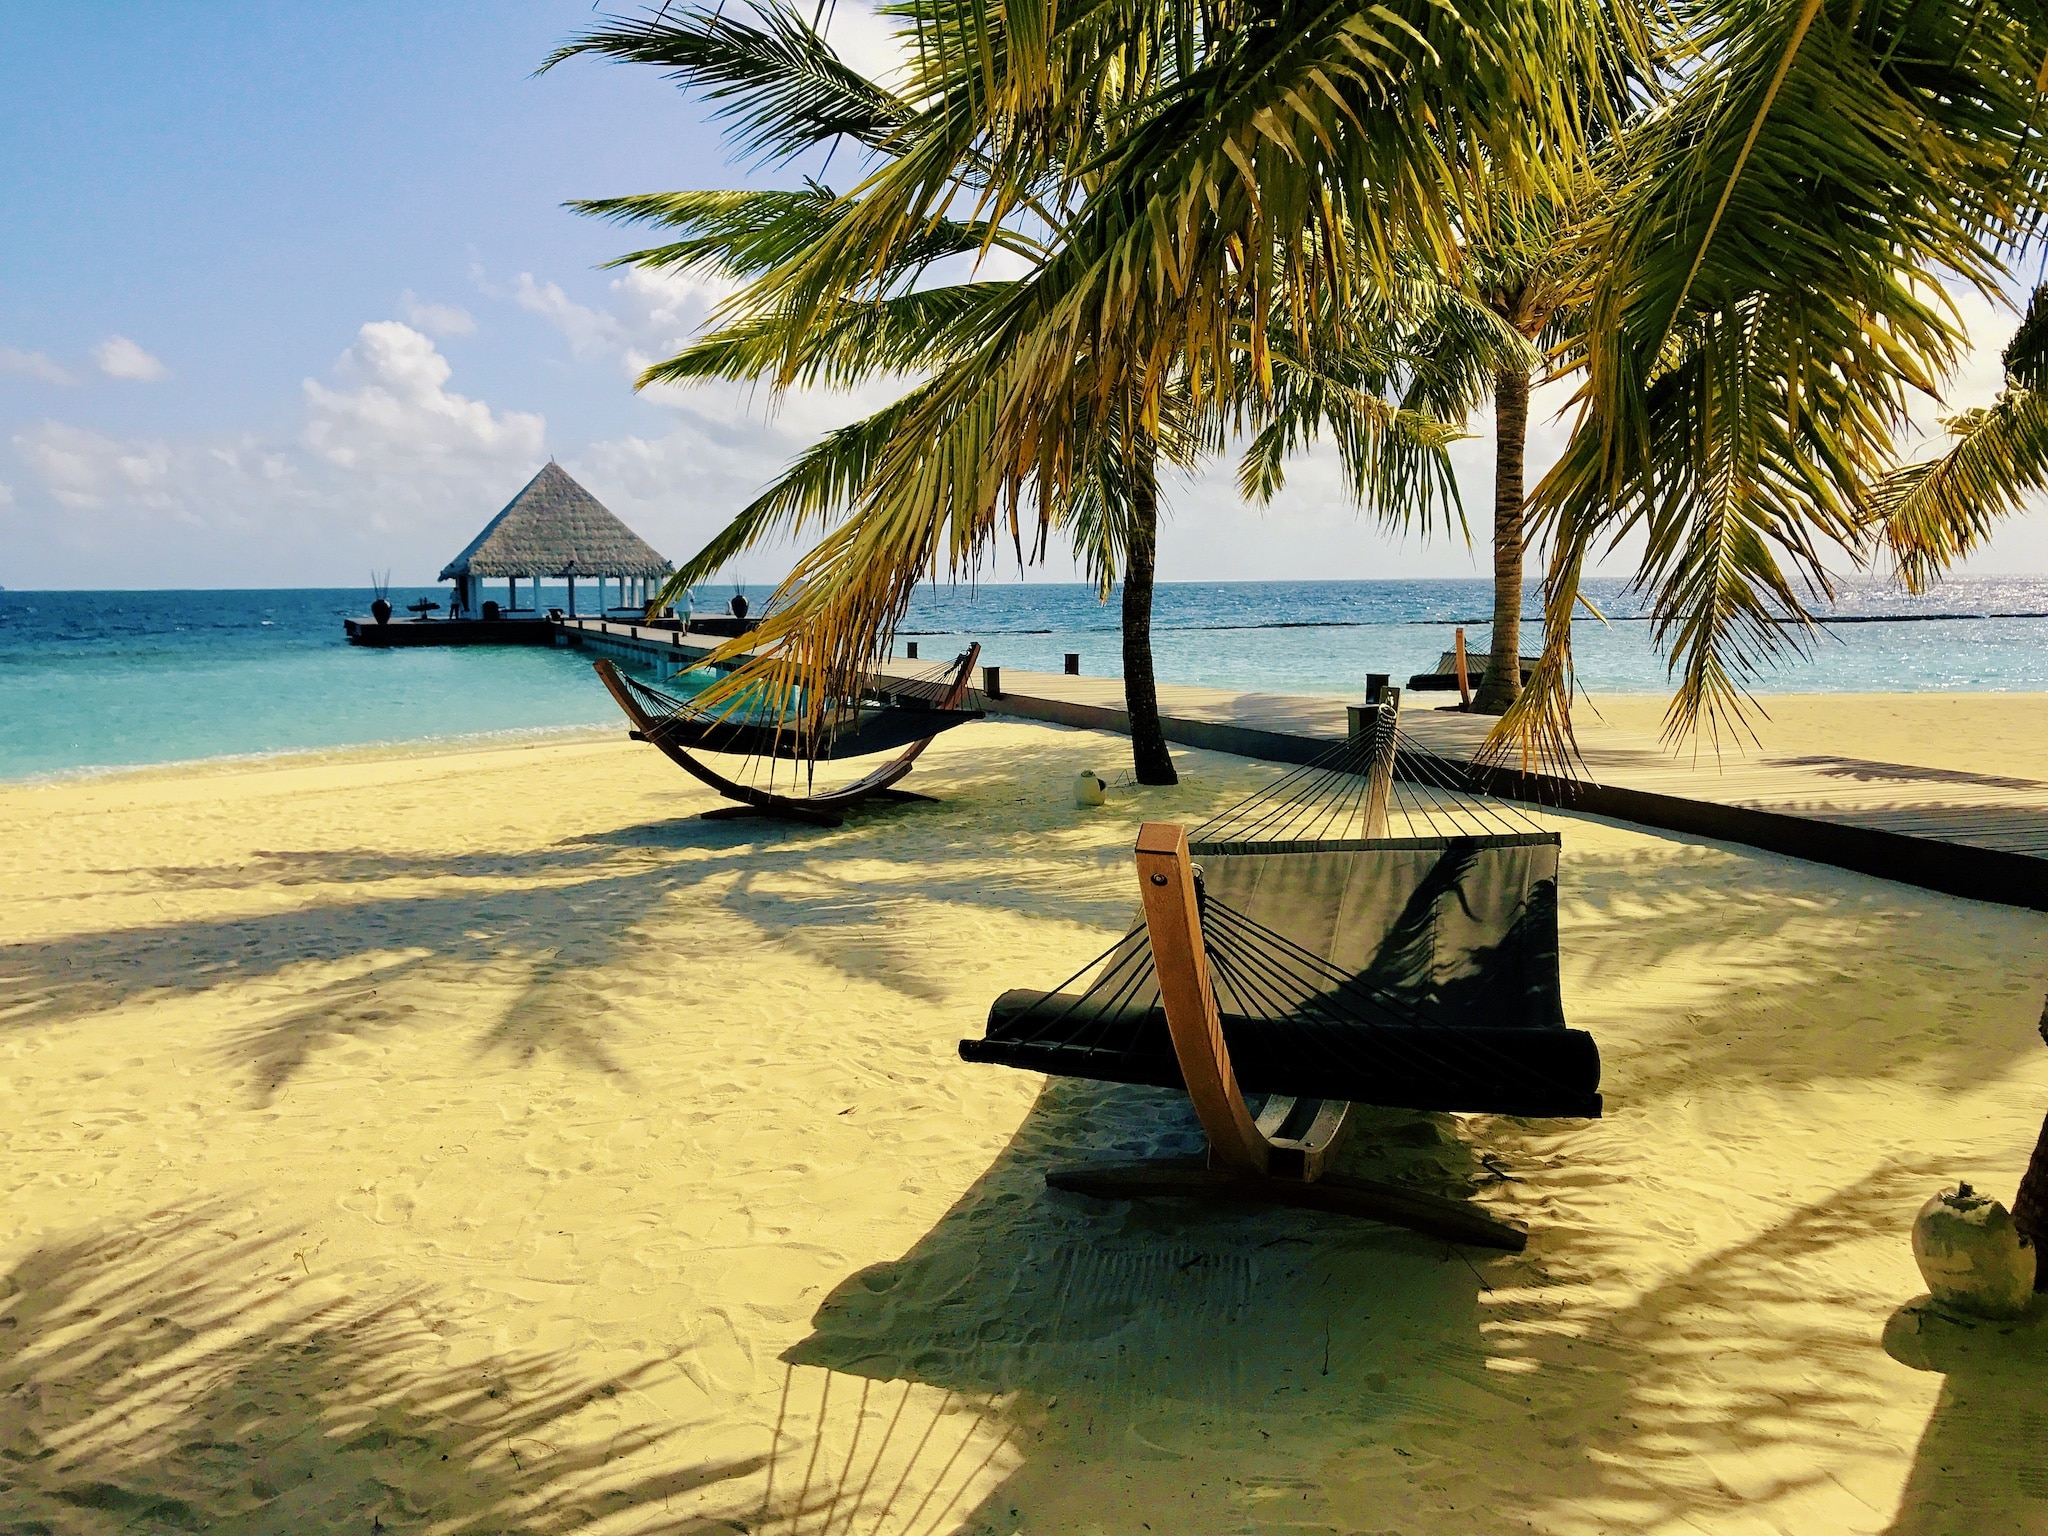 Prenota una vacanza alle Maldive a buon mercato: consigli ed esperienze per l'isola paradisiaca